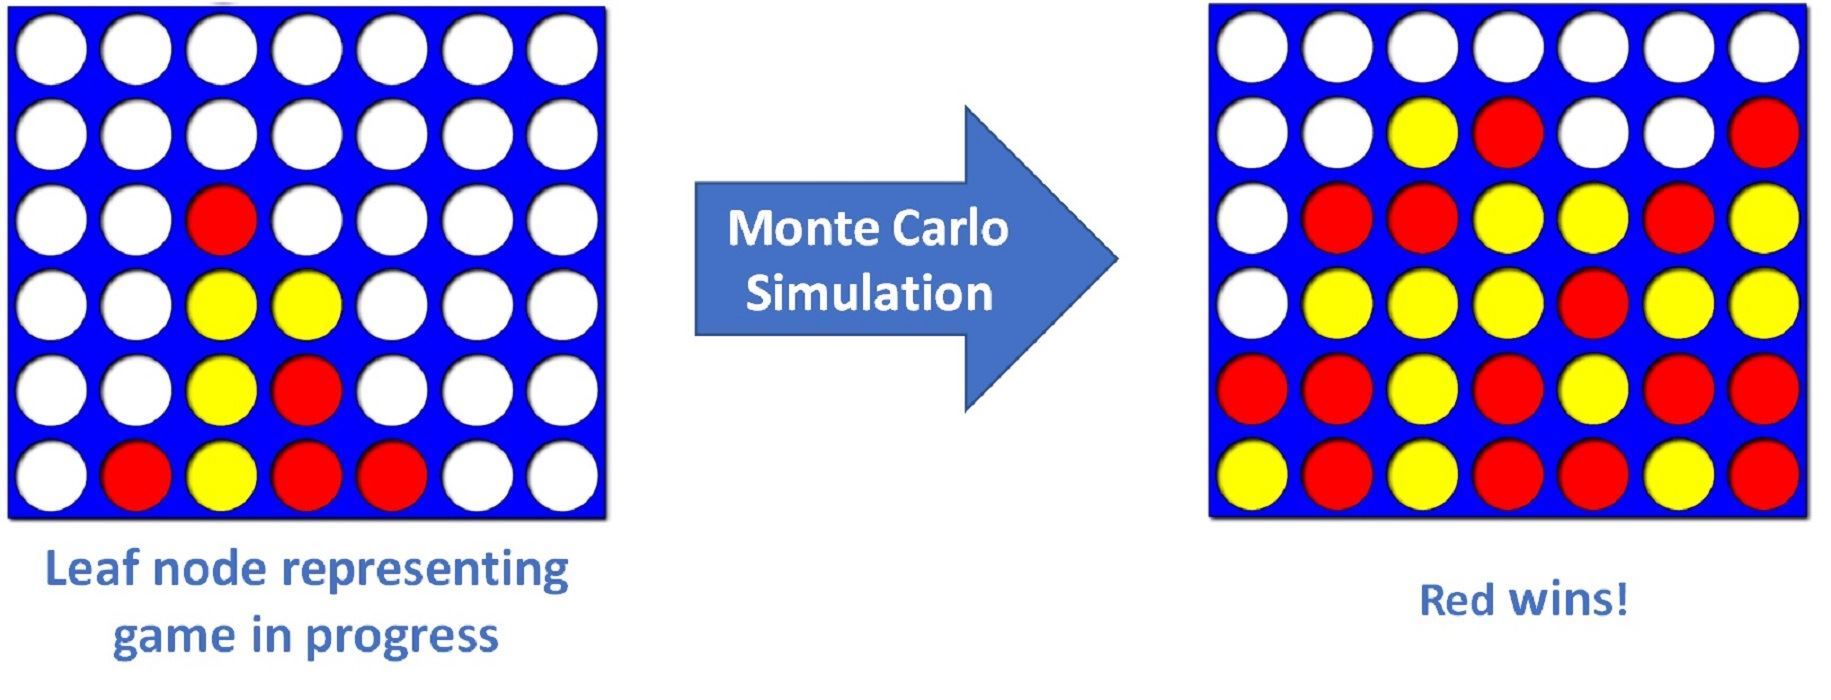 شبیه سازی مونت کارلو در پایتون — راهنمای کاربردی